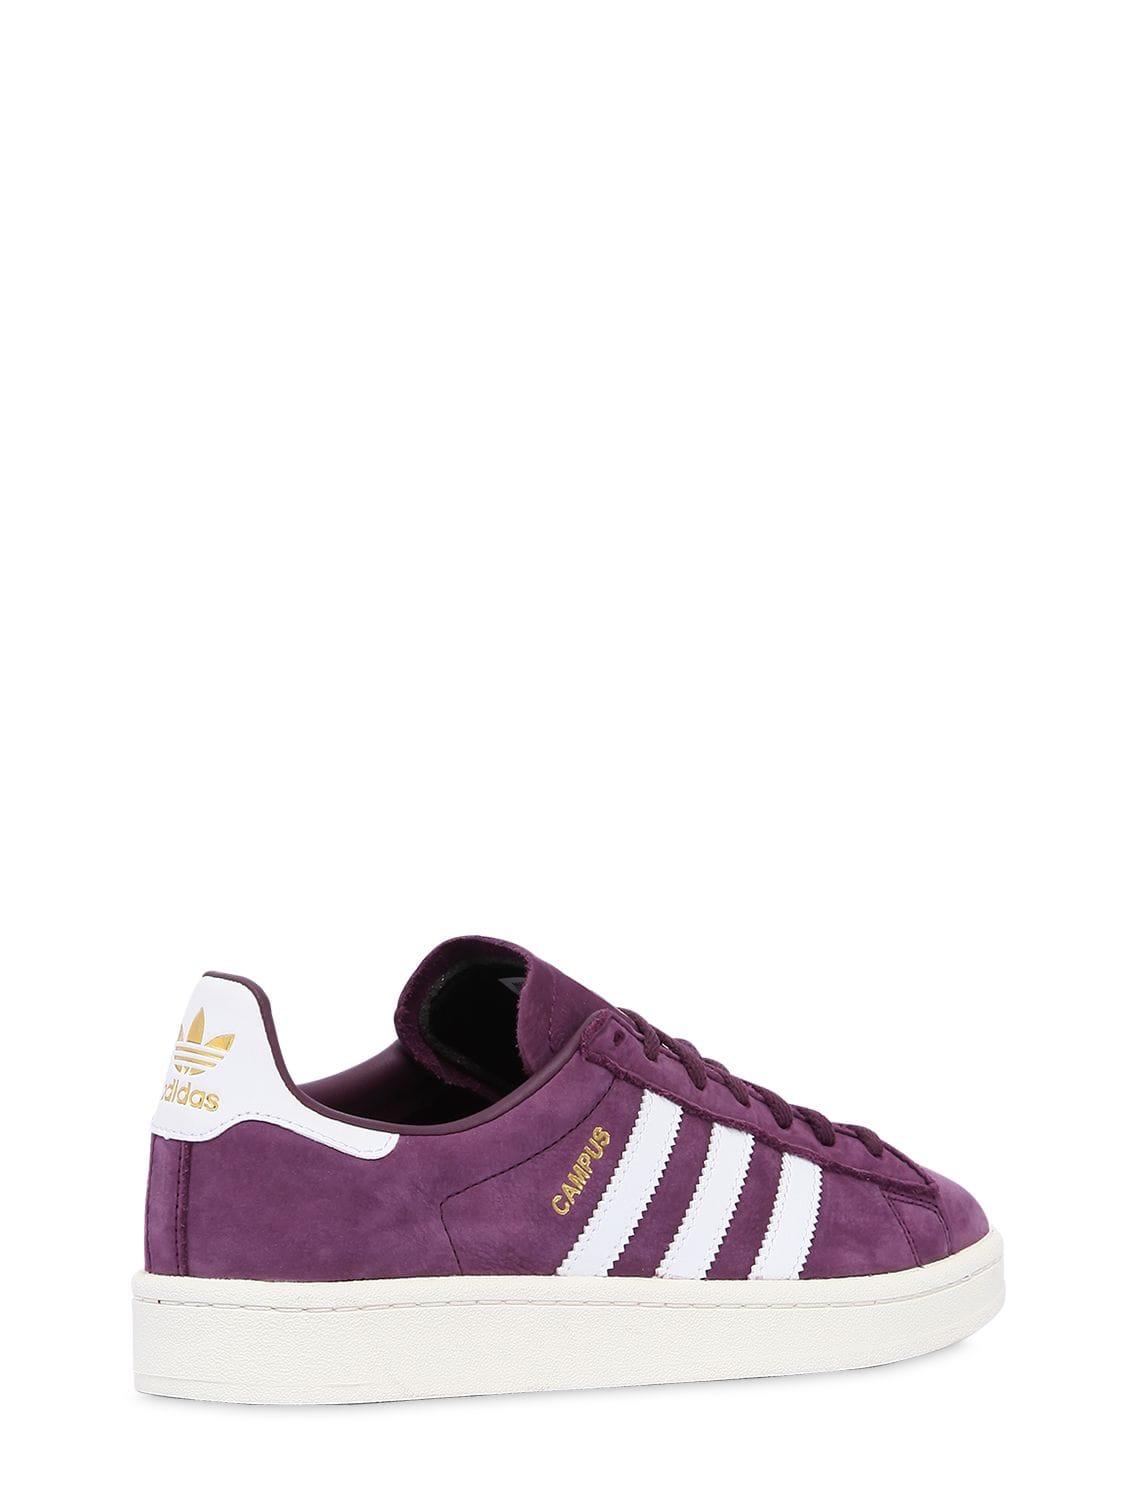 adidas Originals Campus Nubuck Sneakers in Purple | Lyst UK